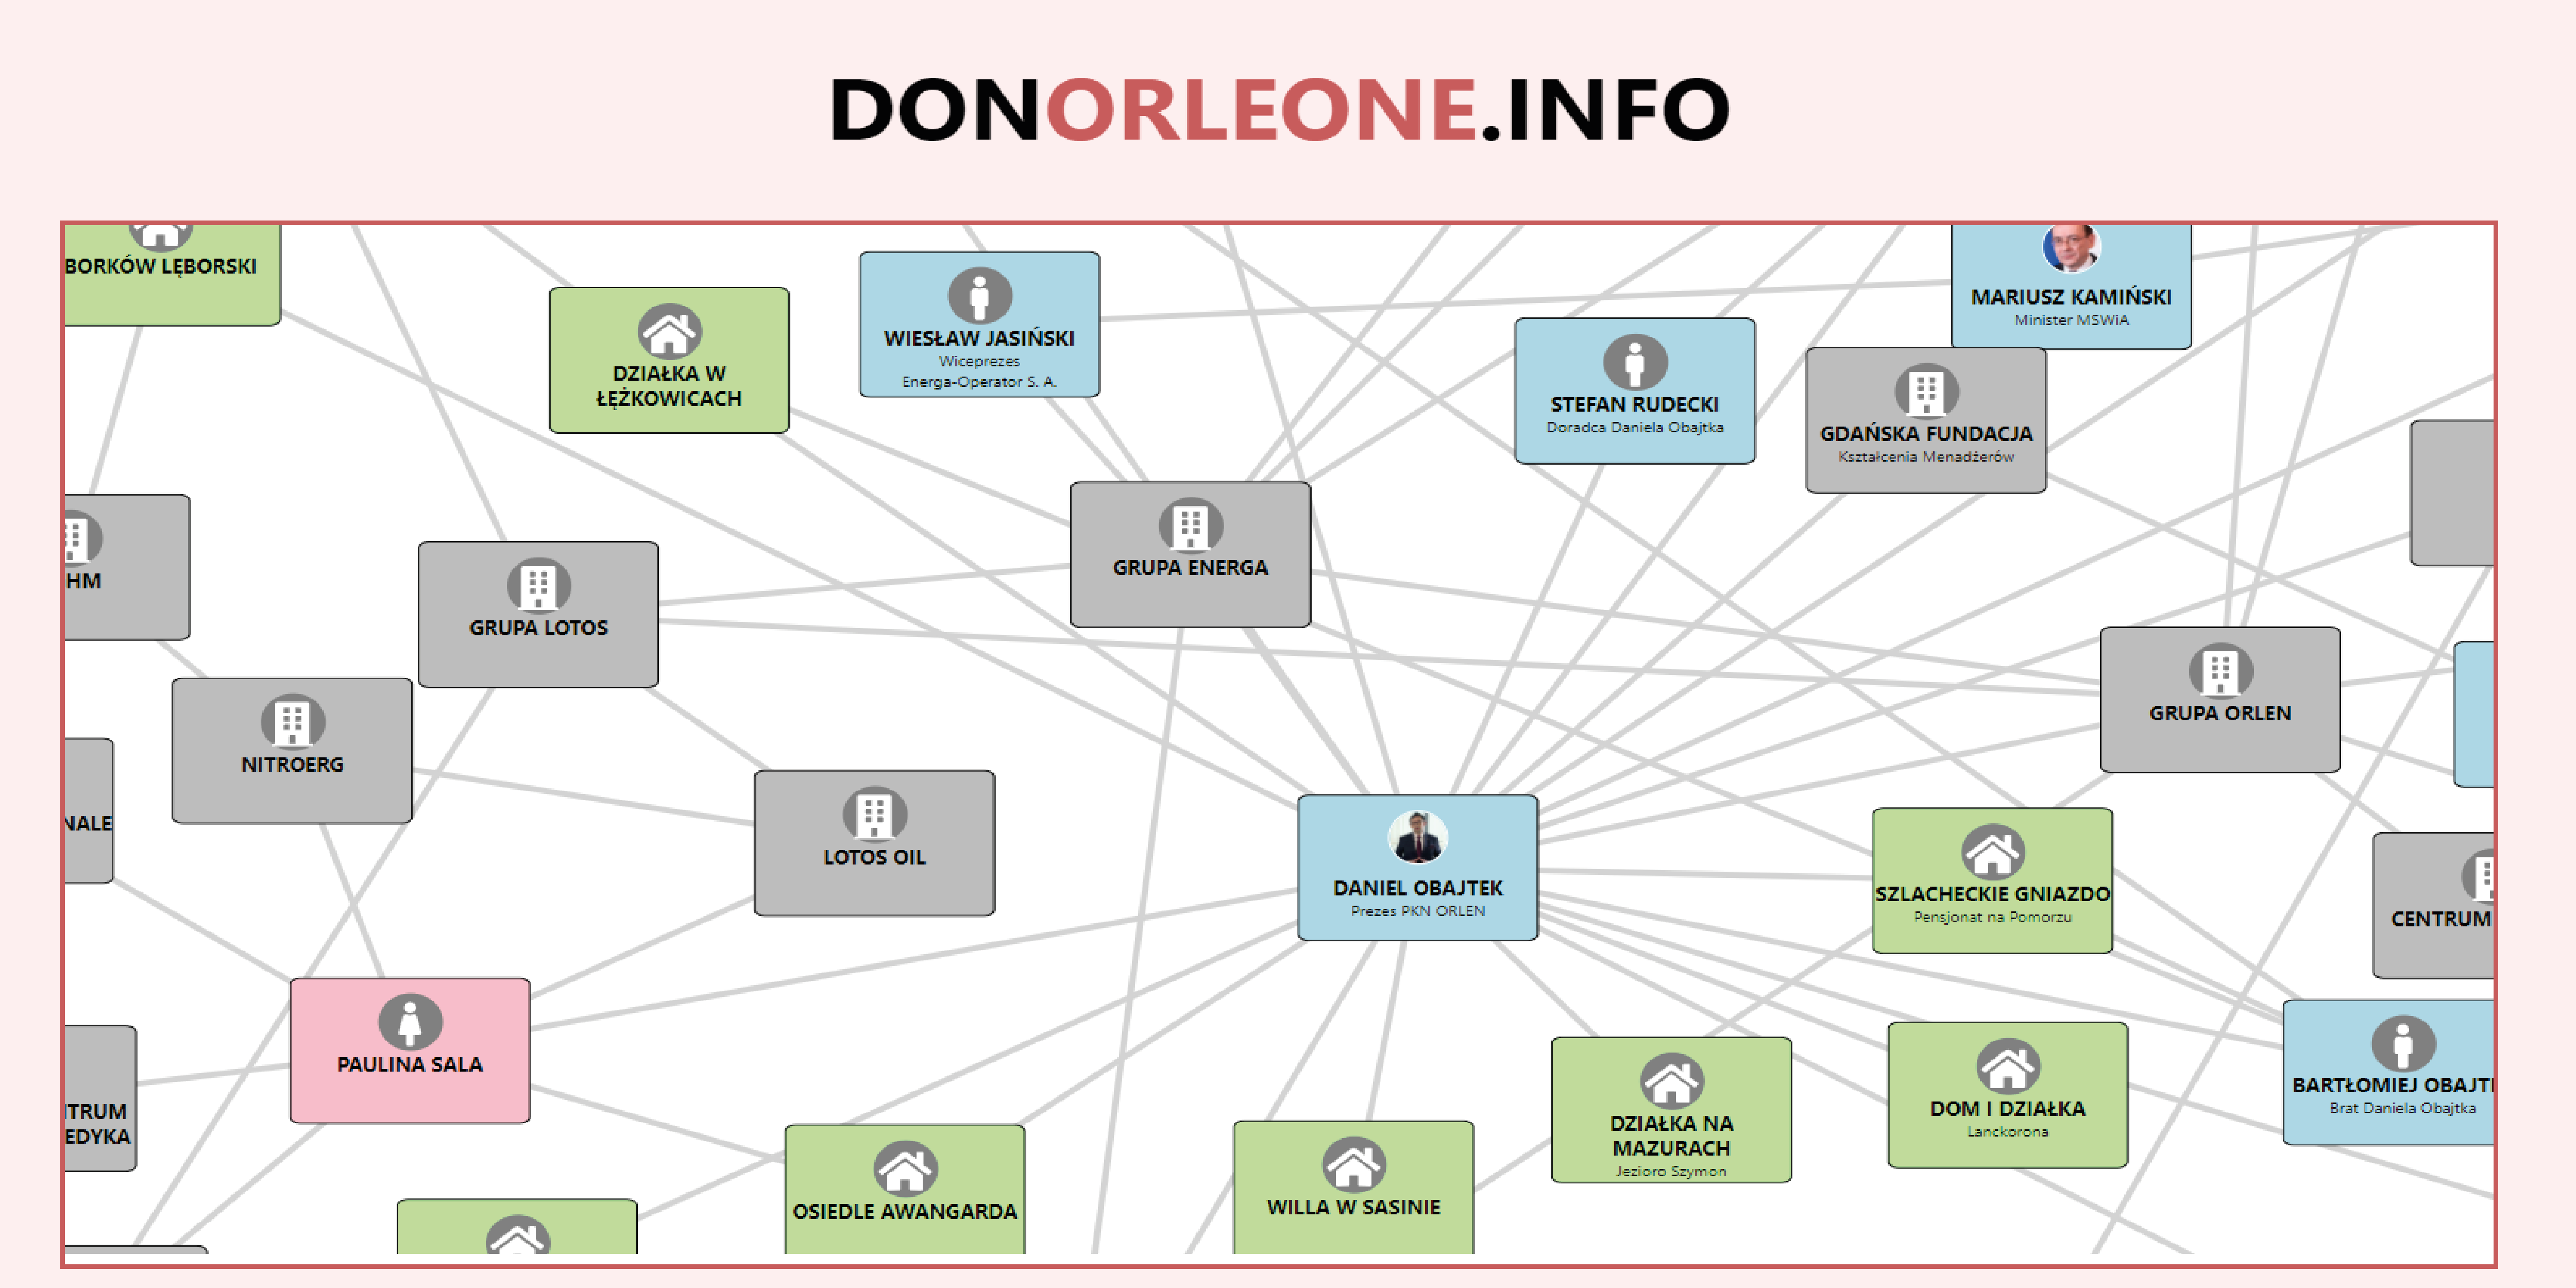 Don Orleone – kontakty i powiązania Daniela Obajtka